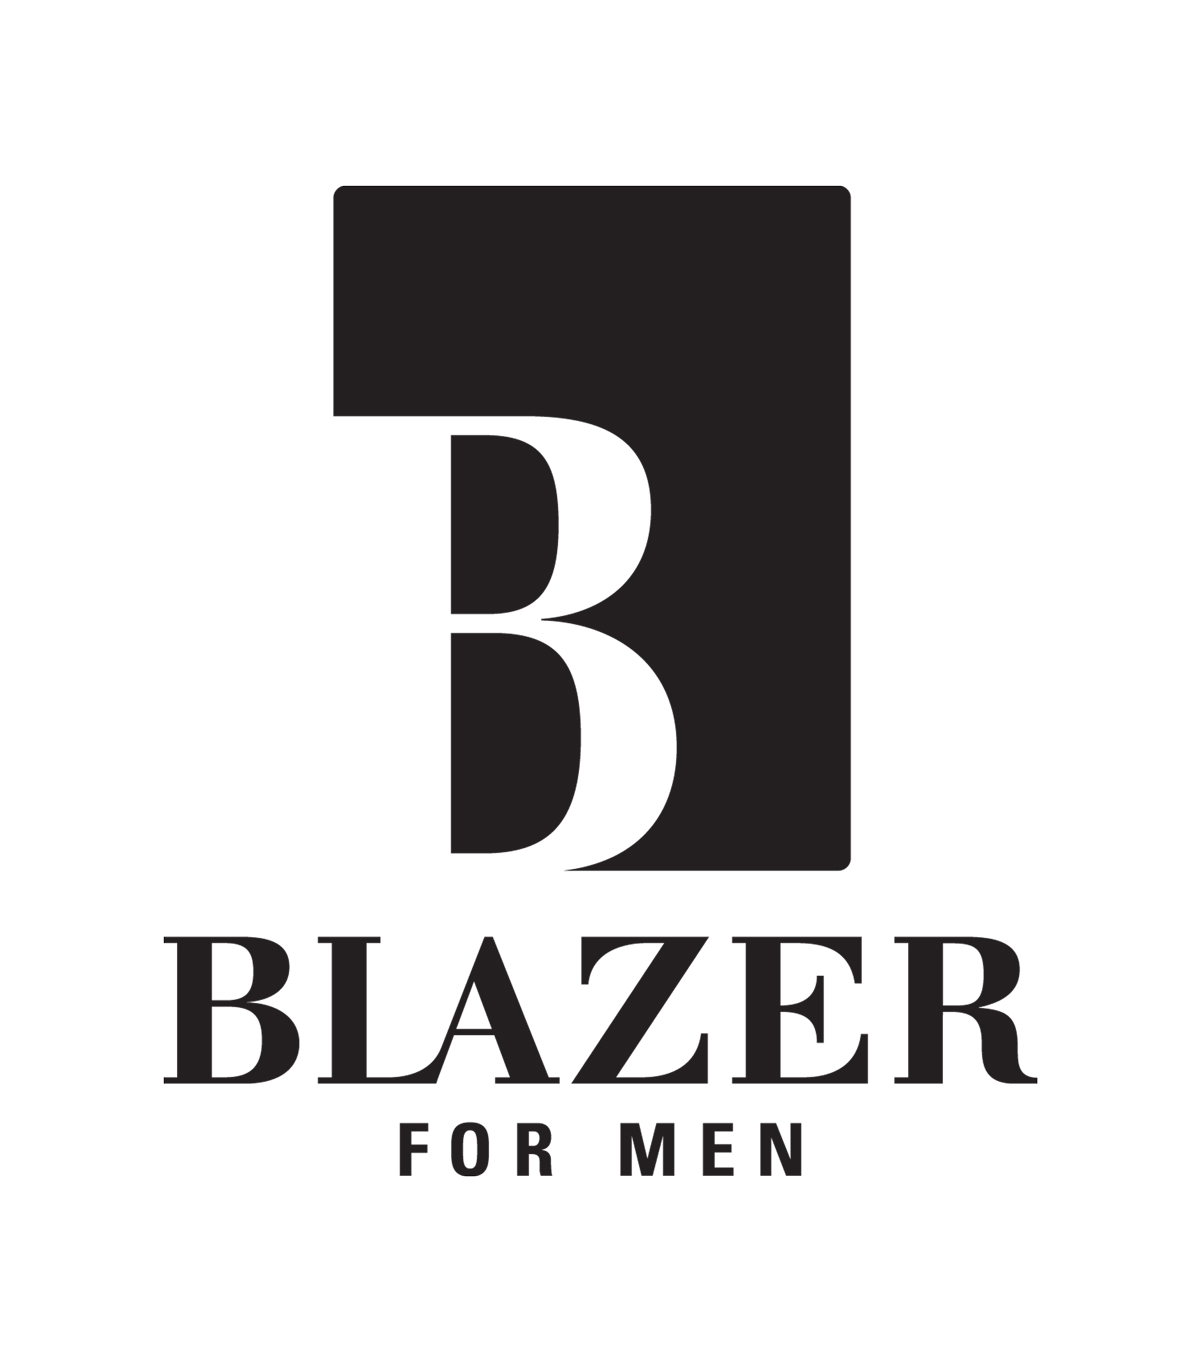 BLAZER FOR MEN (G.R. CLOTHING CO. LTD.)